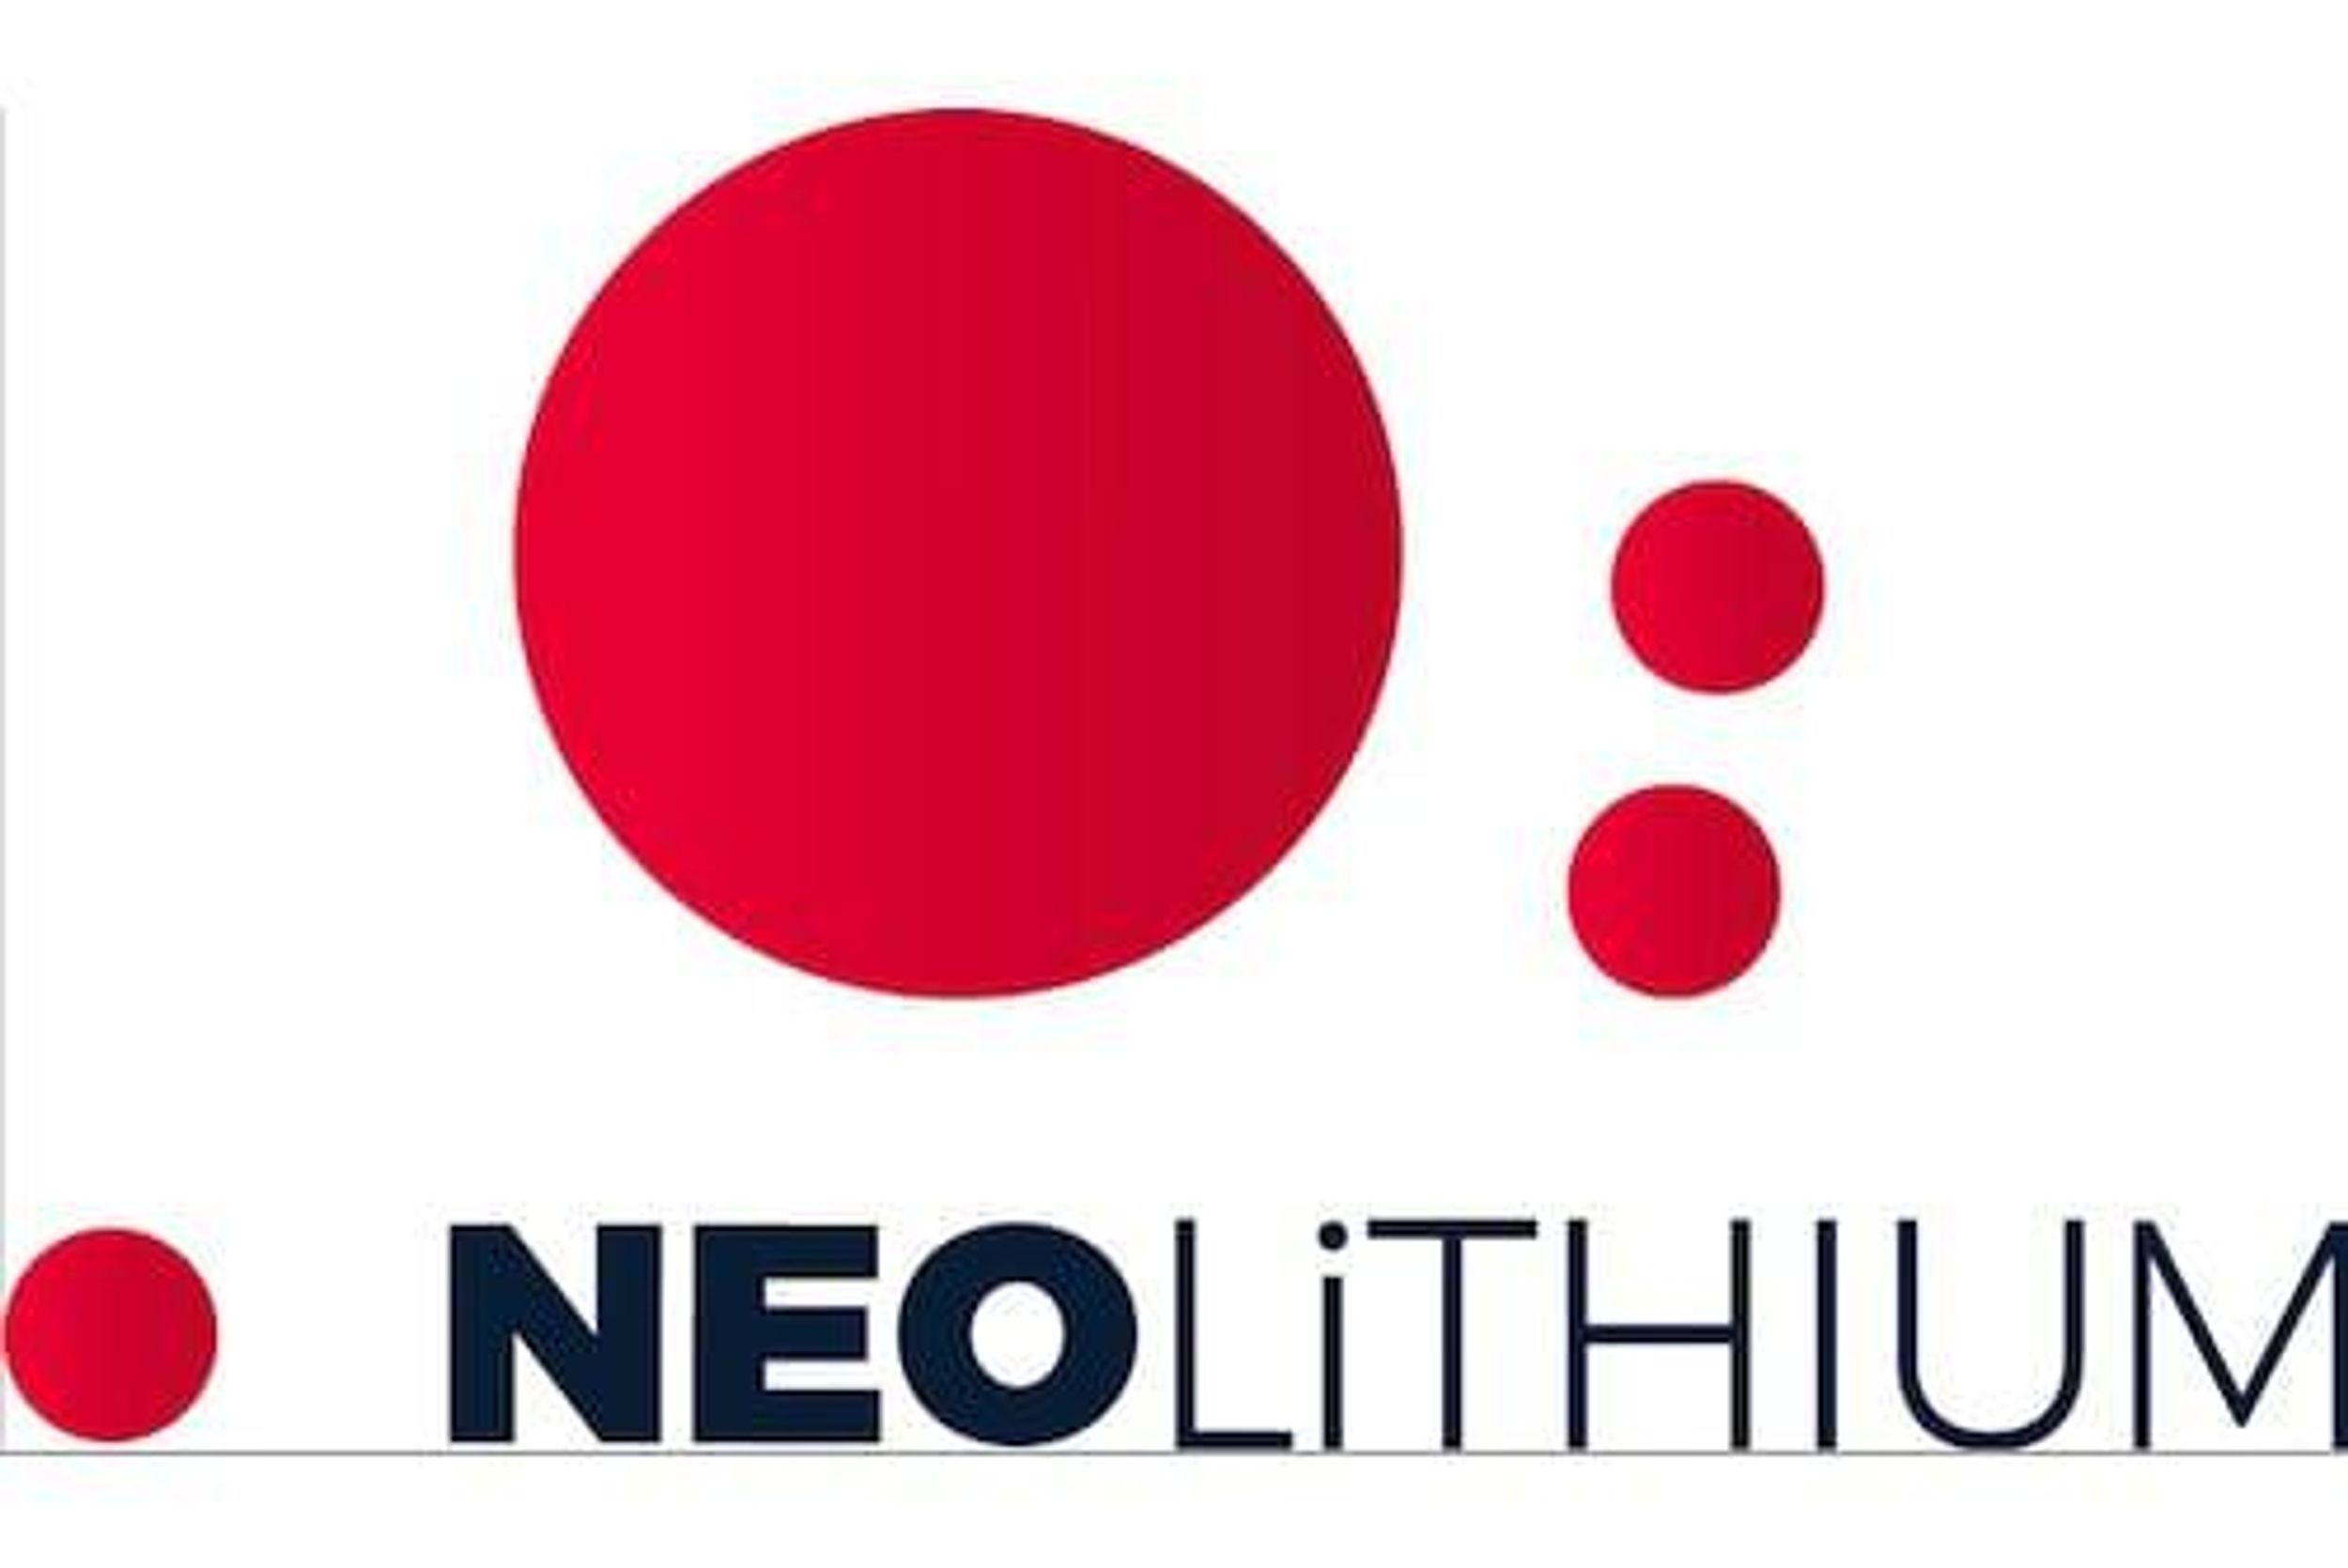 neo lithium